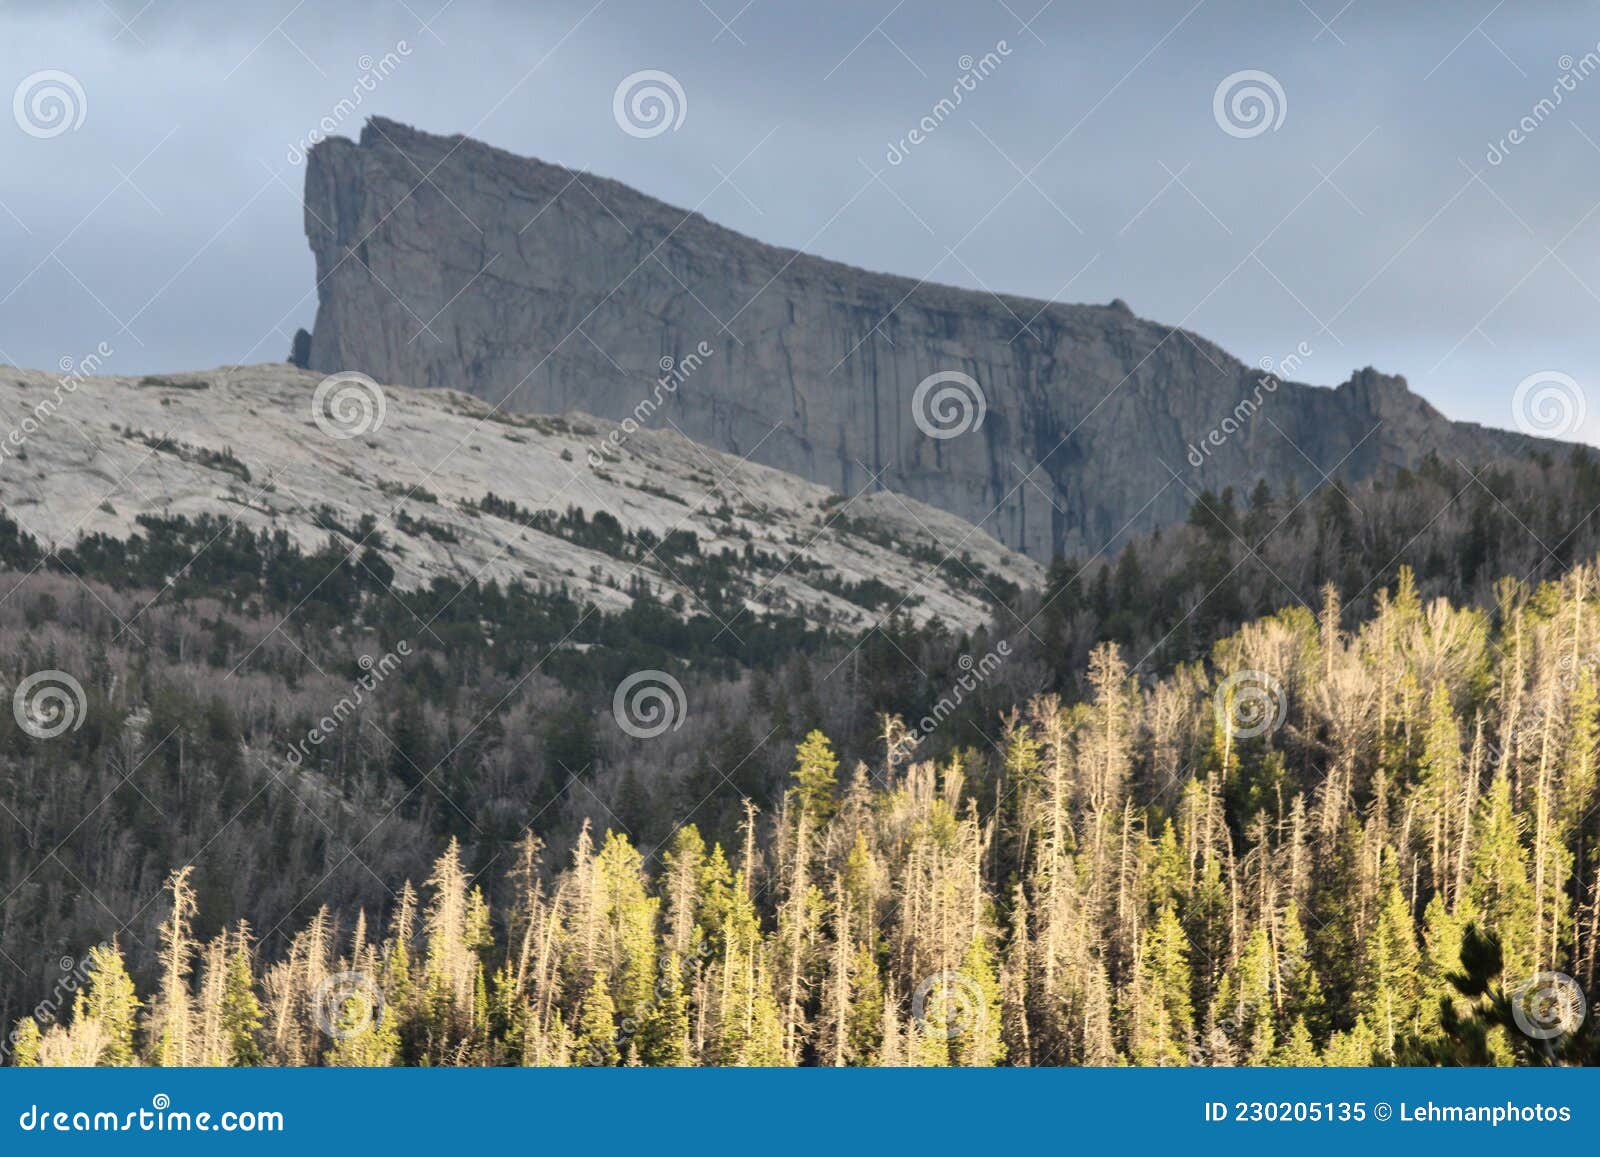 forest mountain highlight - bridger wilderness